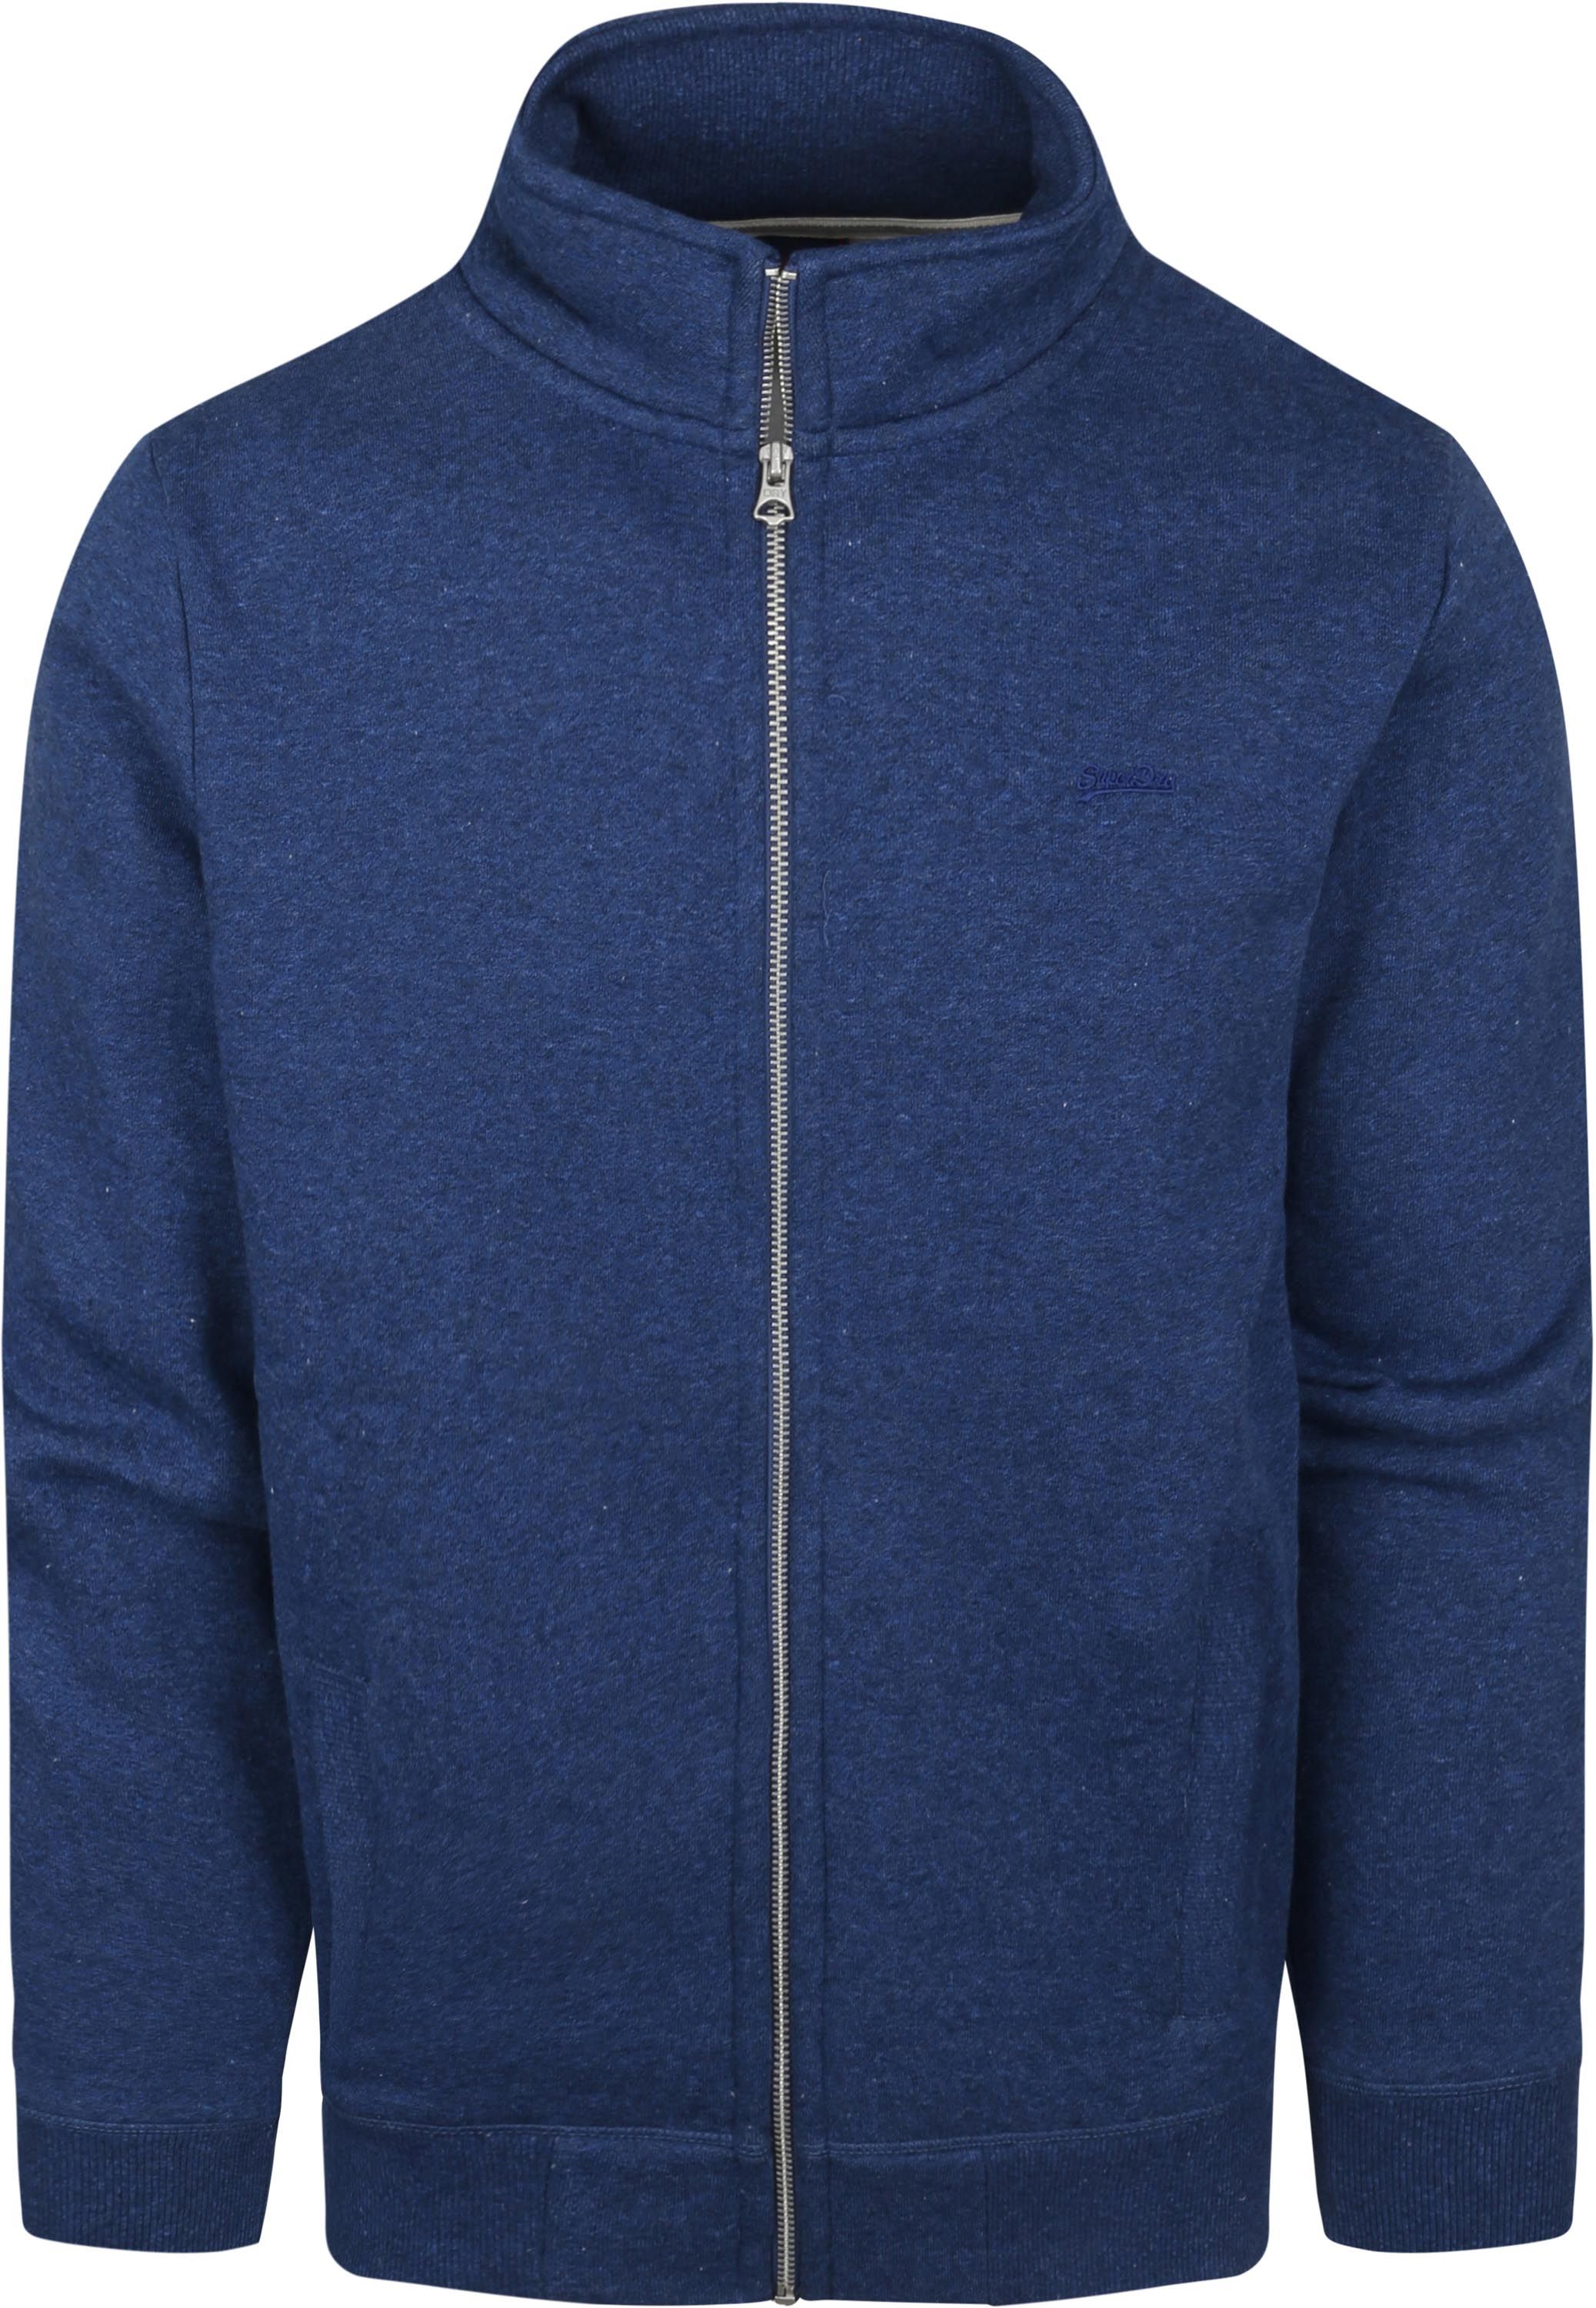 Superdry Classic Zip Sweater Dark Dark Blue Blue size 3XL